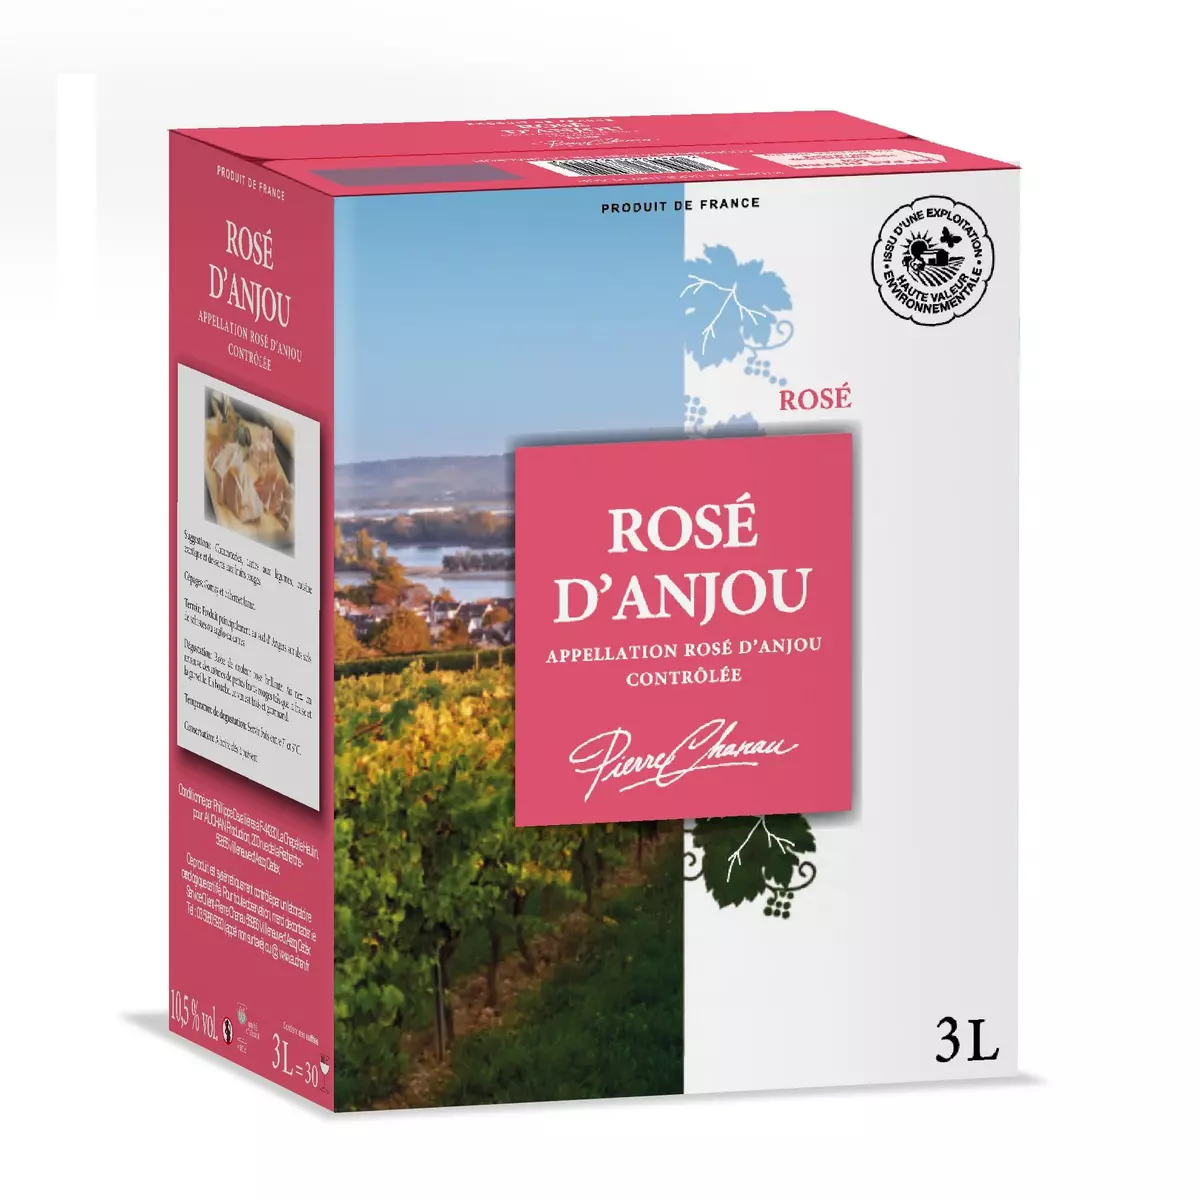 PIERRE CHANAU AOP Rosé d'Anjou Grand format 3L